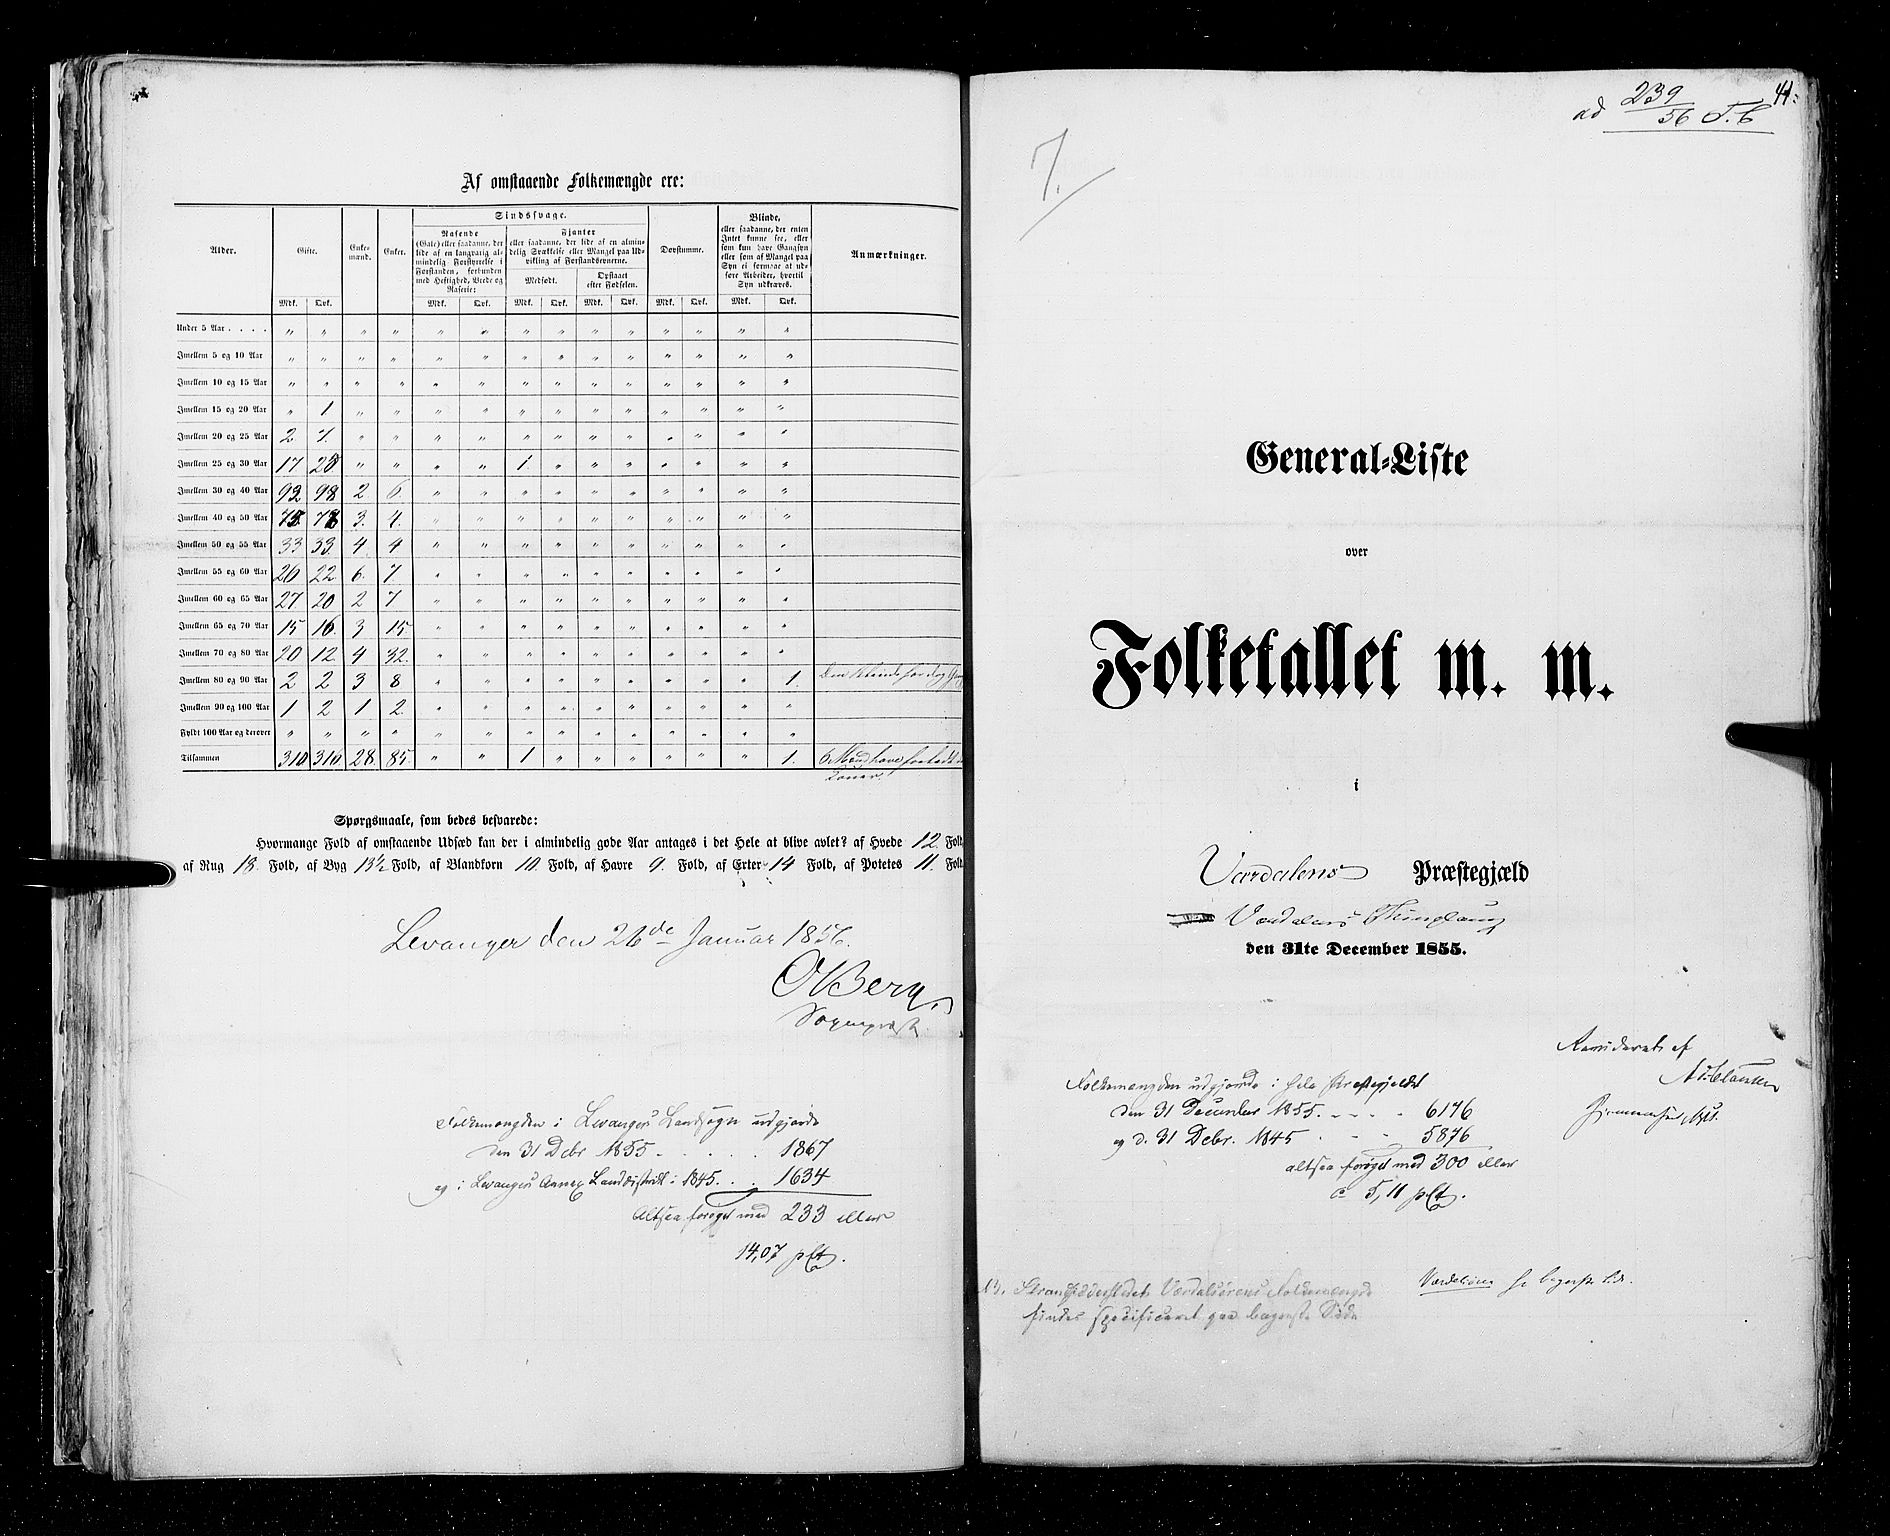 RA, Census 1855, vol. 6A: Nordre Trondhjem amt og Nordland amt, 1855, p. 41